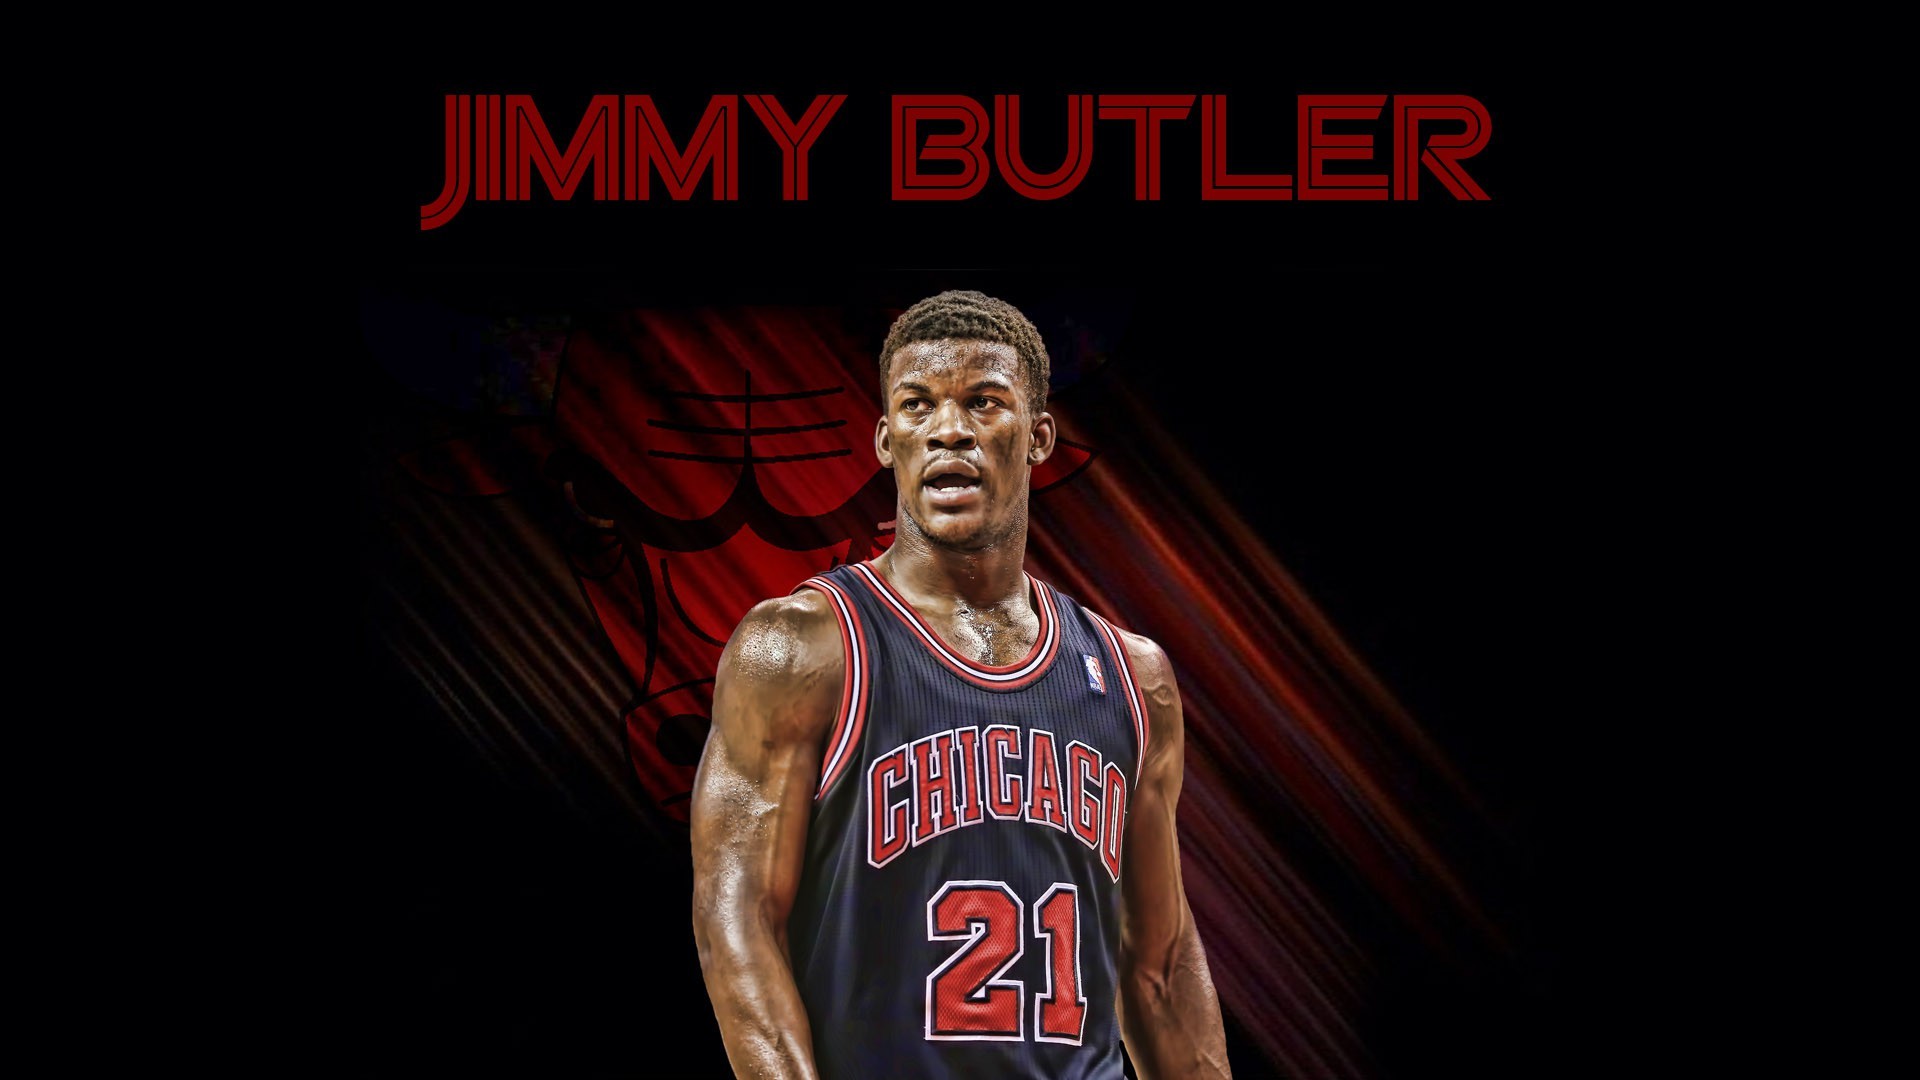 1920x1080 Scottie Pippen Basketball Wallpaper. Jimmy Butler Chicago Bulls Wallpaper.